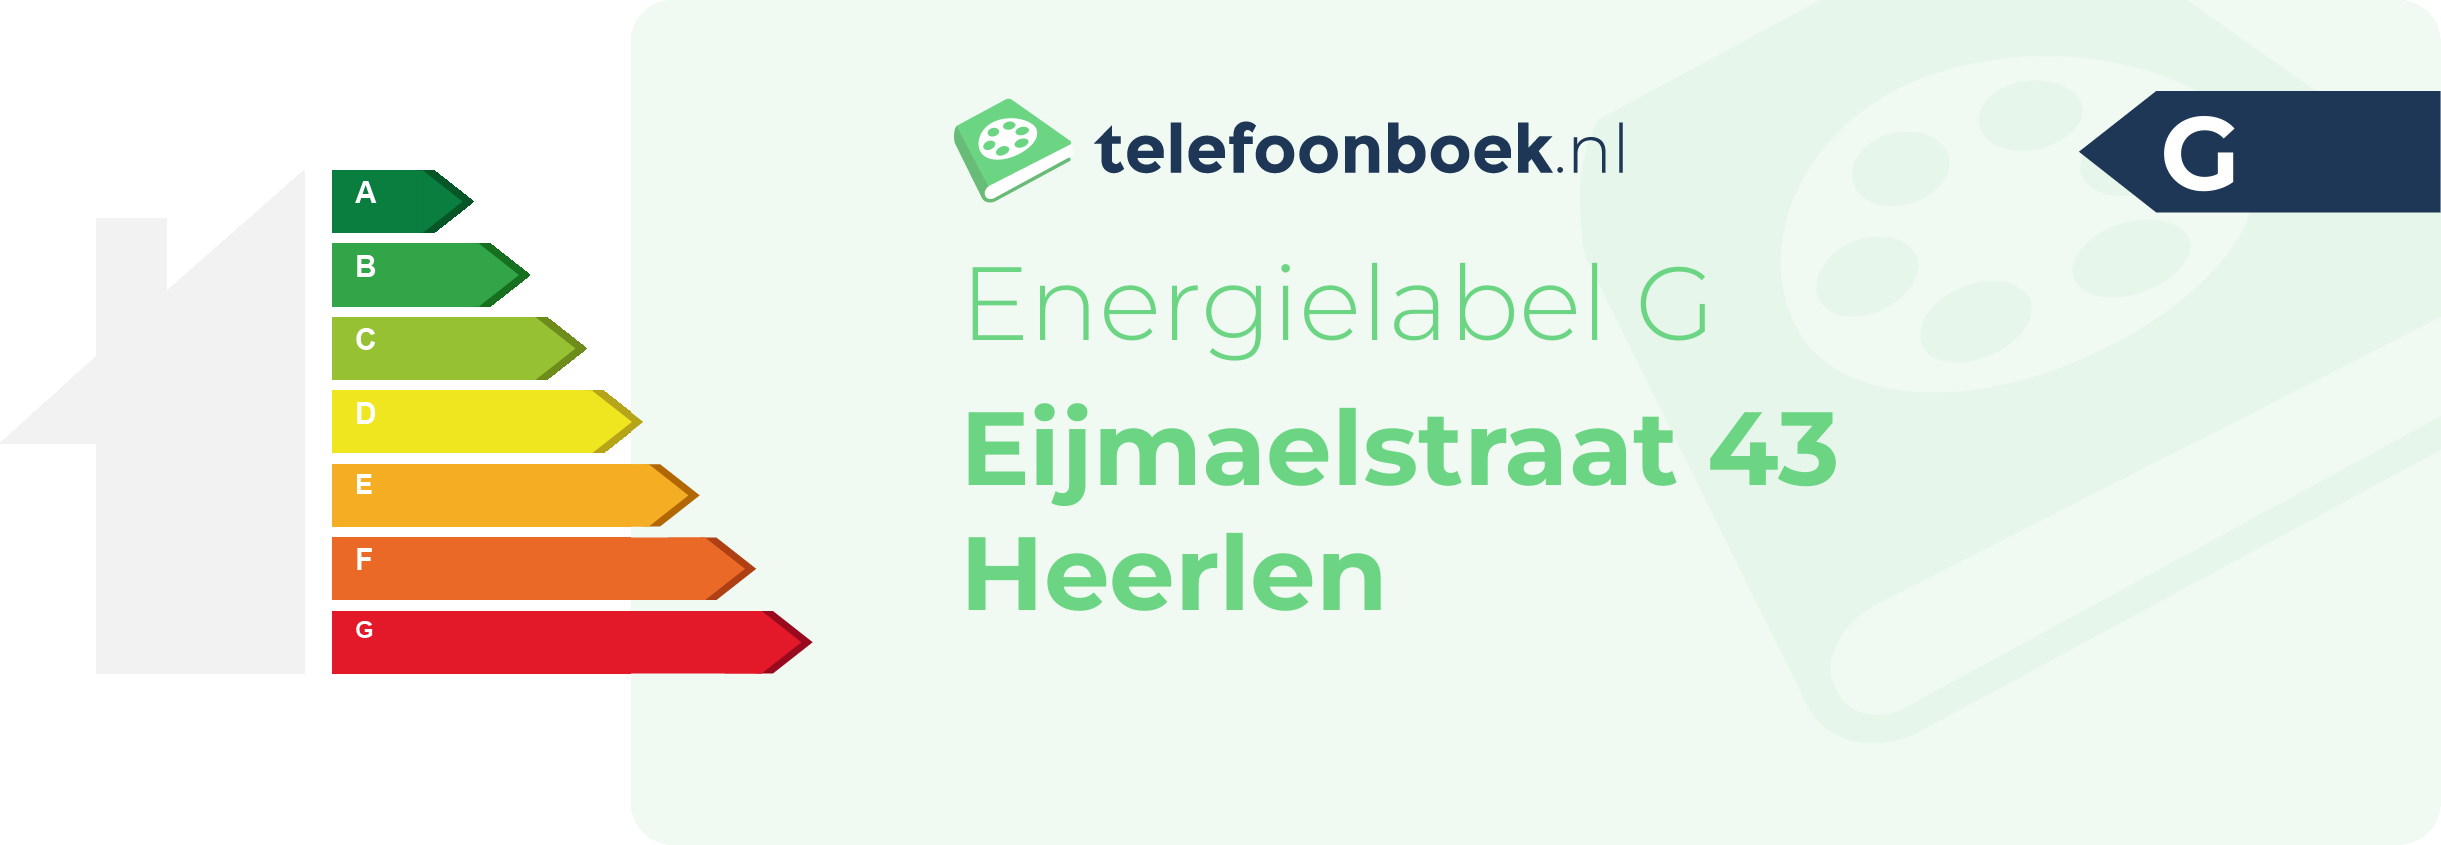 Energielabel Eijmaelstraat 43 Heerlen